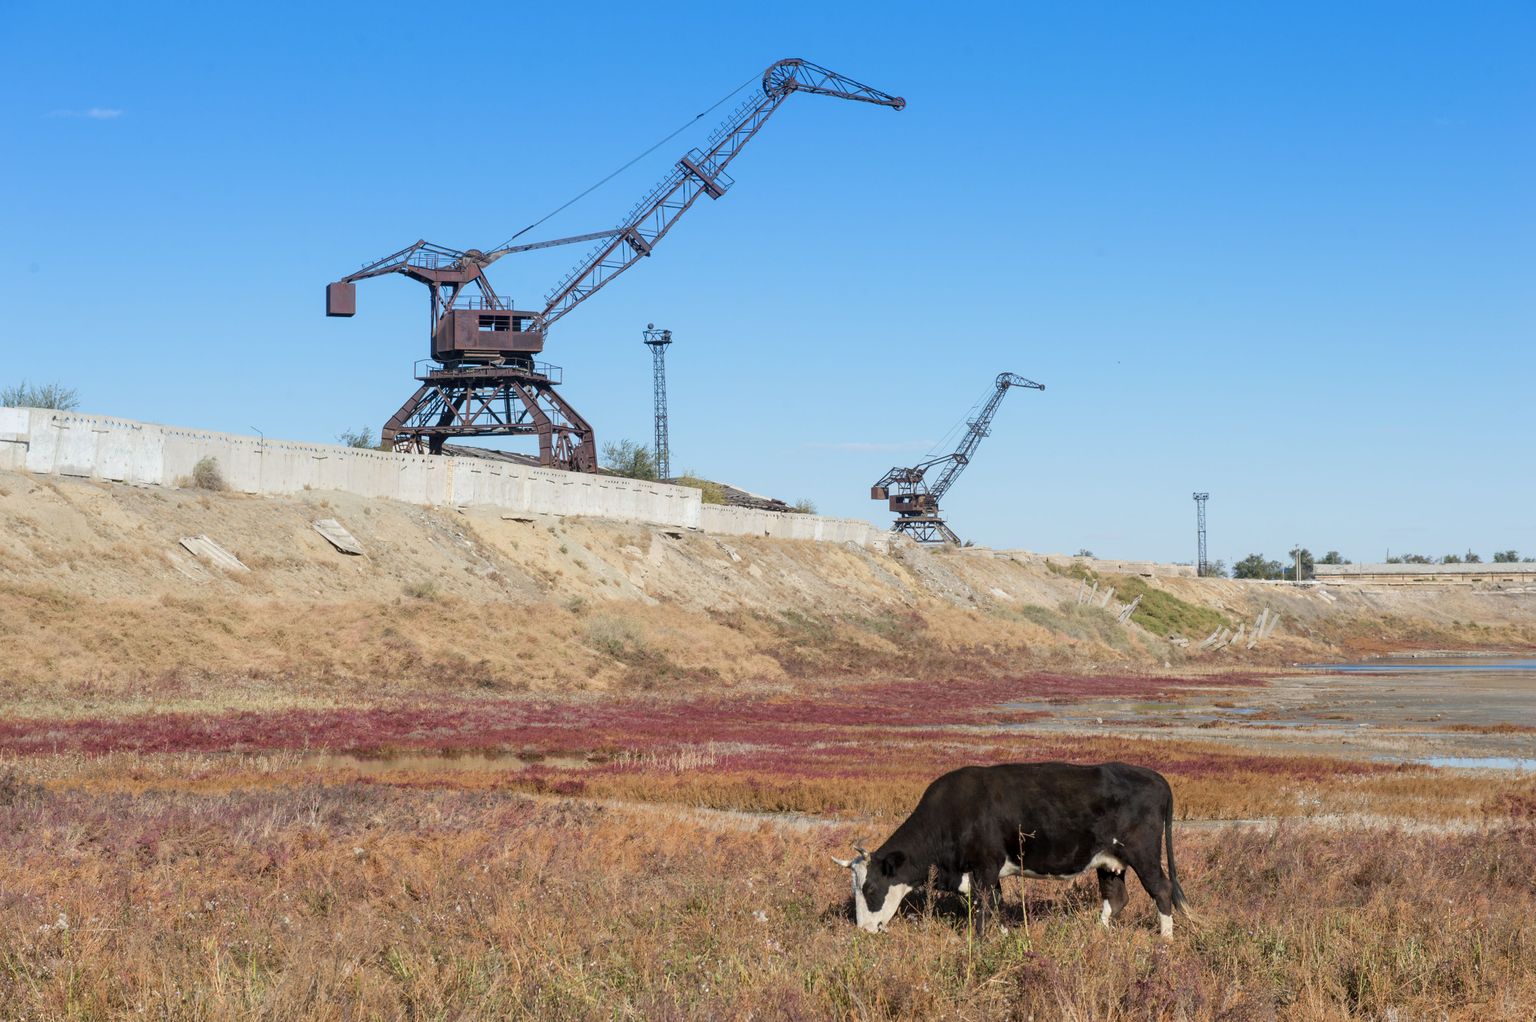 Lehm sööb kuivanud Araali mere põhjas.